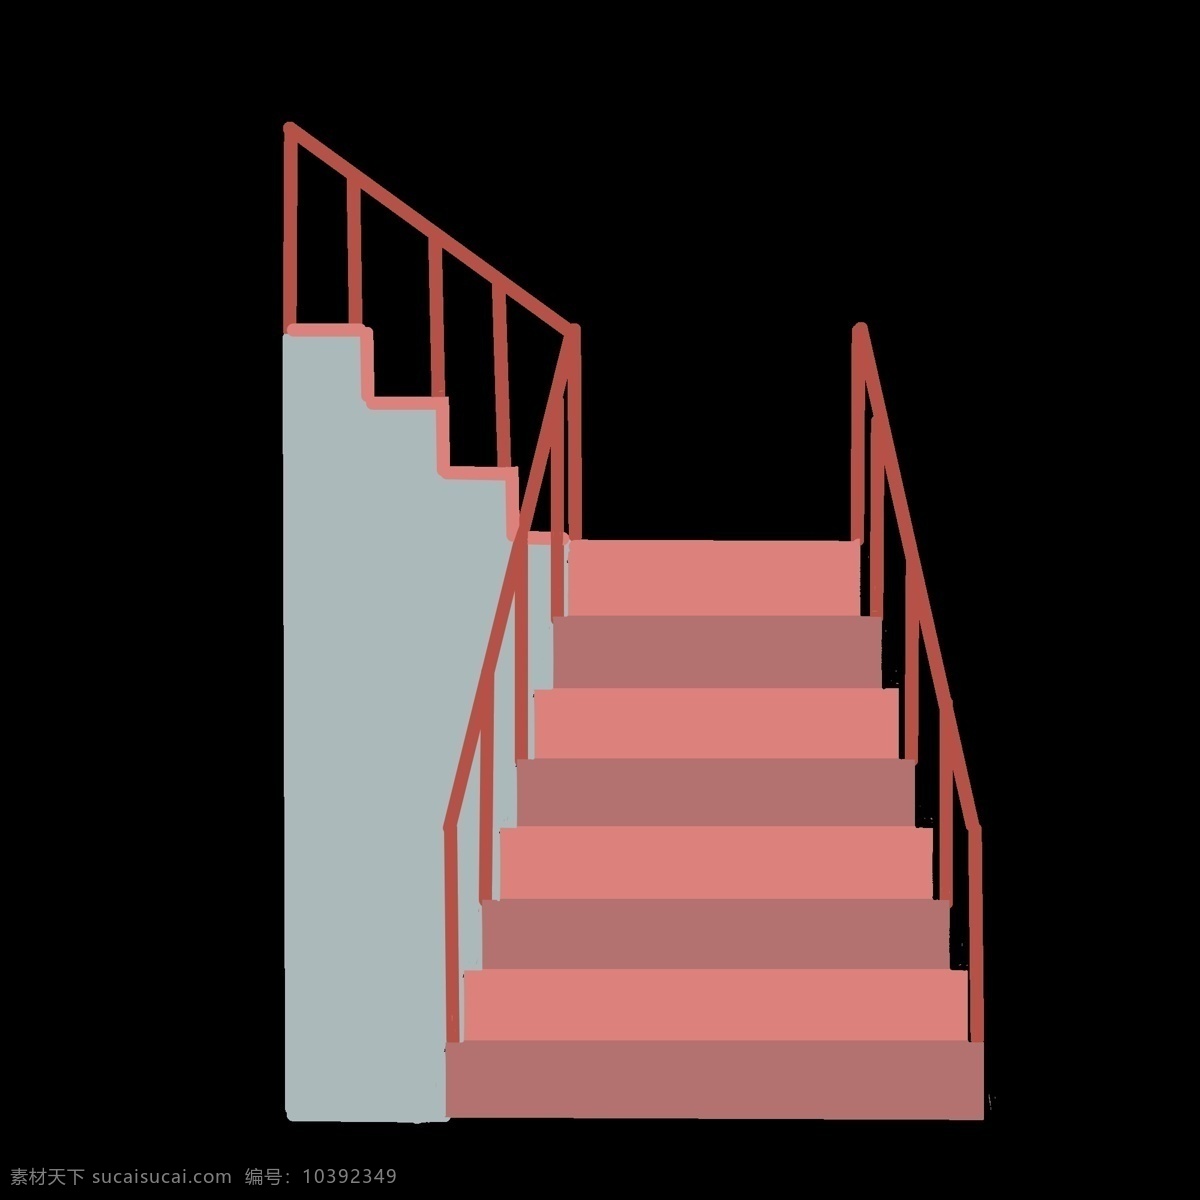 楼房 建筑 楼梯 插画 楼梯间 台阶 上 下楼 楼道 阶梯 水泥楼梯插画 楼房建筑楼梯 拐弯楼梯插画